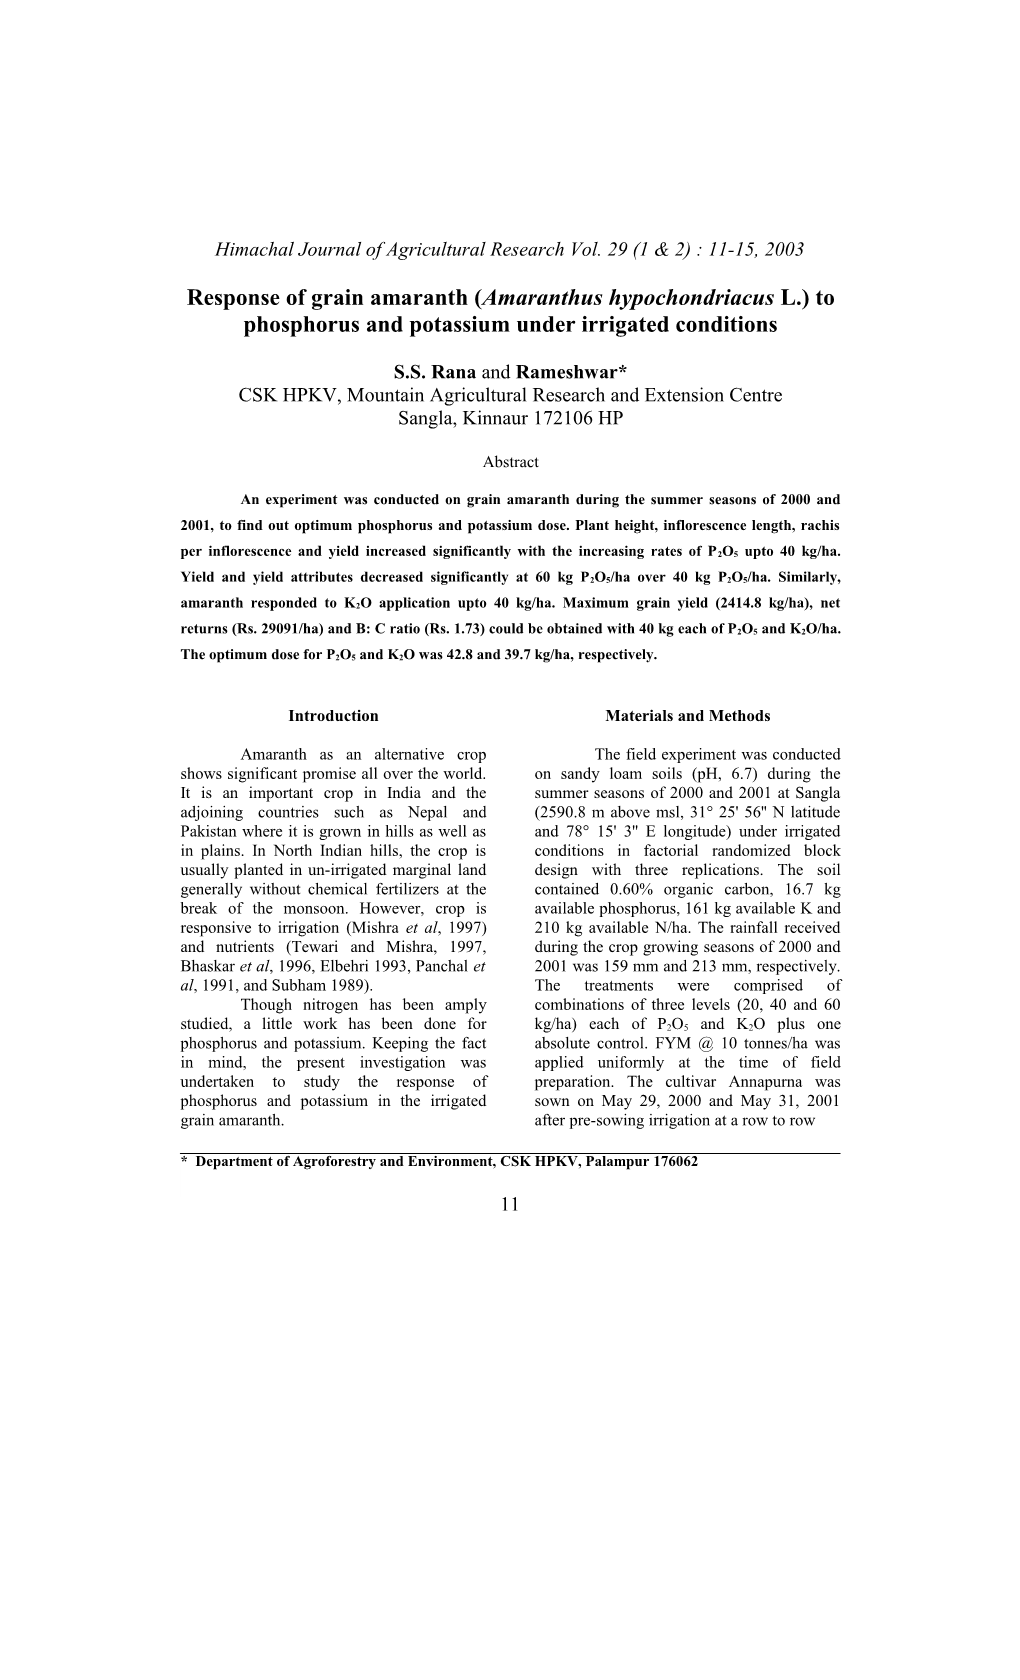 Response of Grain Amaranth (Amaranthus Hypochondriacus L.) to Phosphorus and Potassium